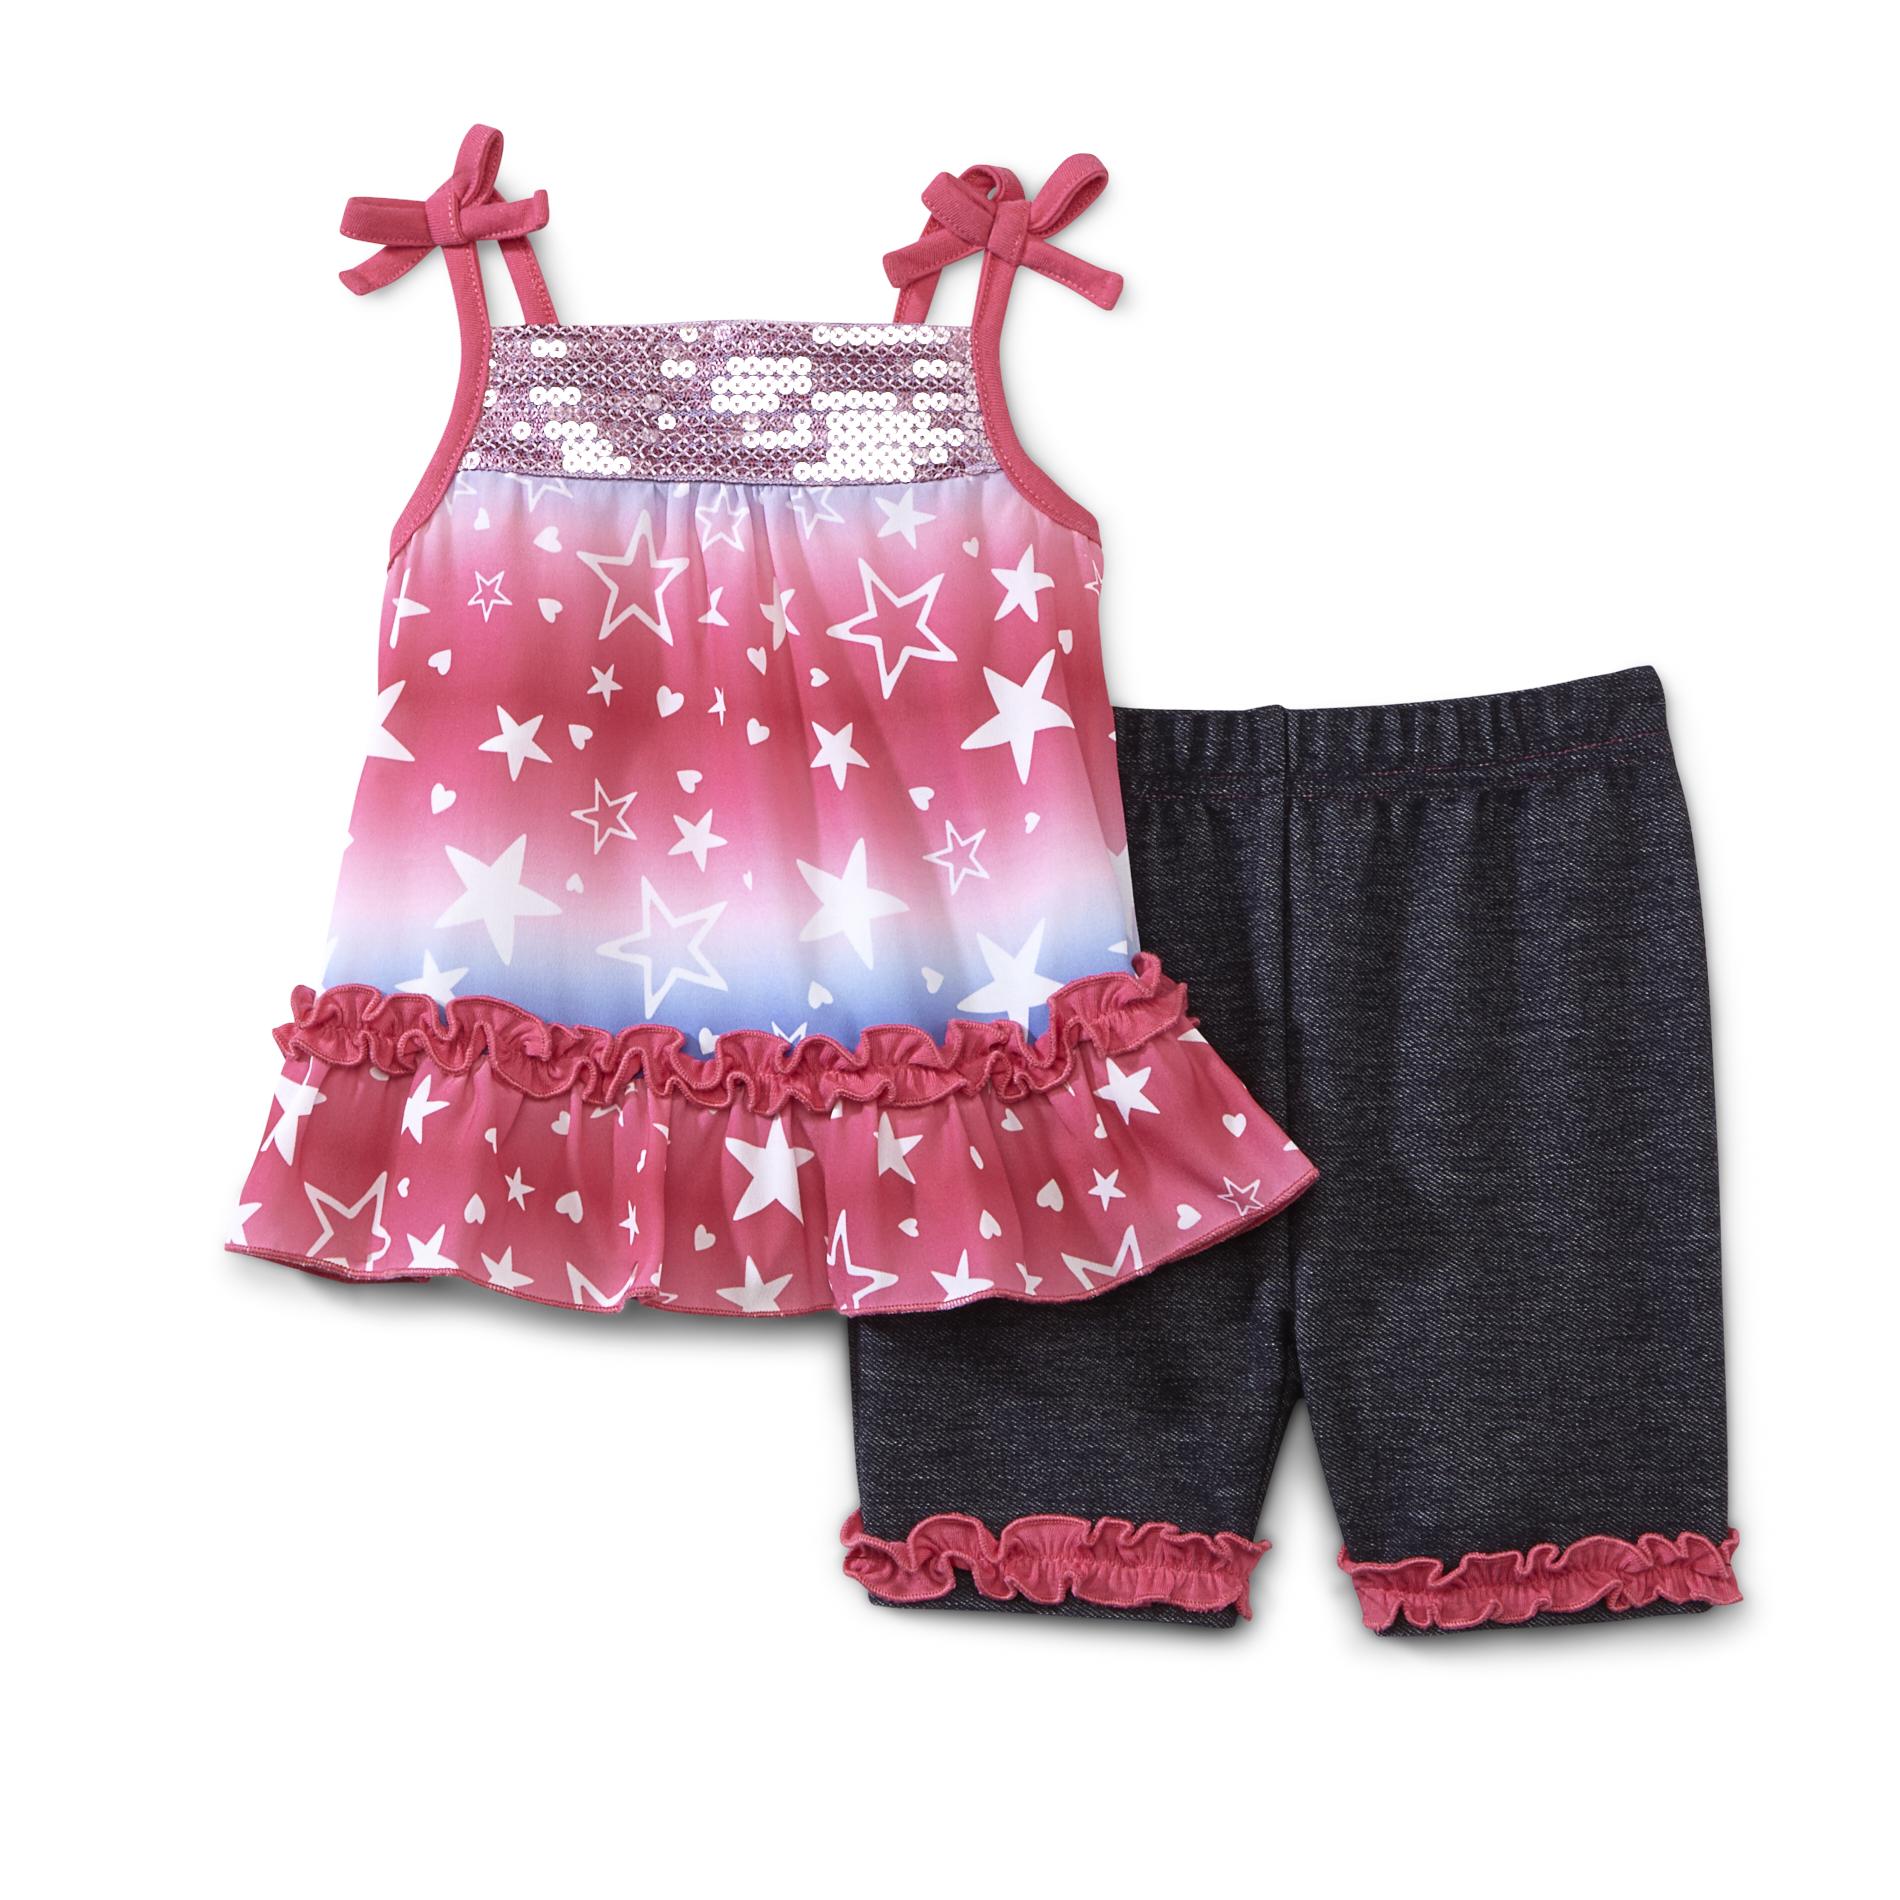 WonderKids Infant & Toddler Girl's Top & Shorts - Stars